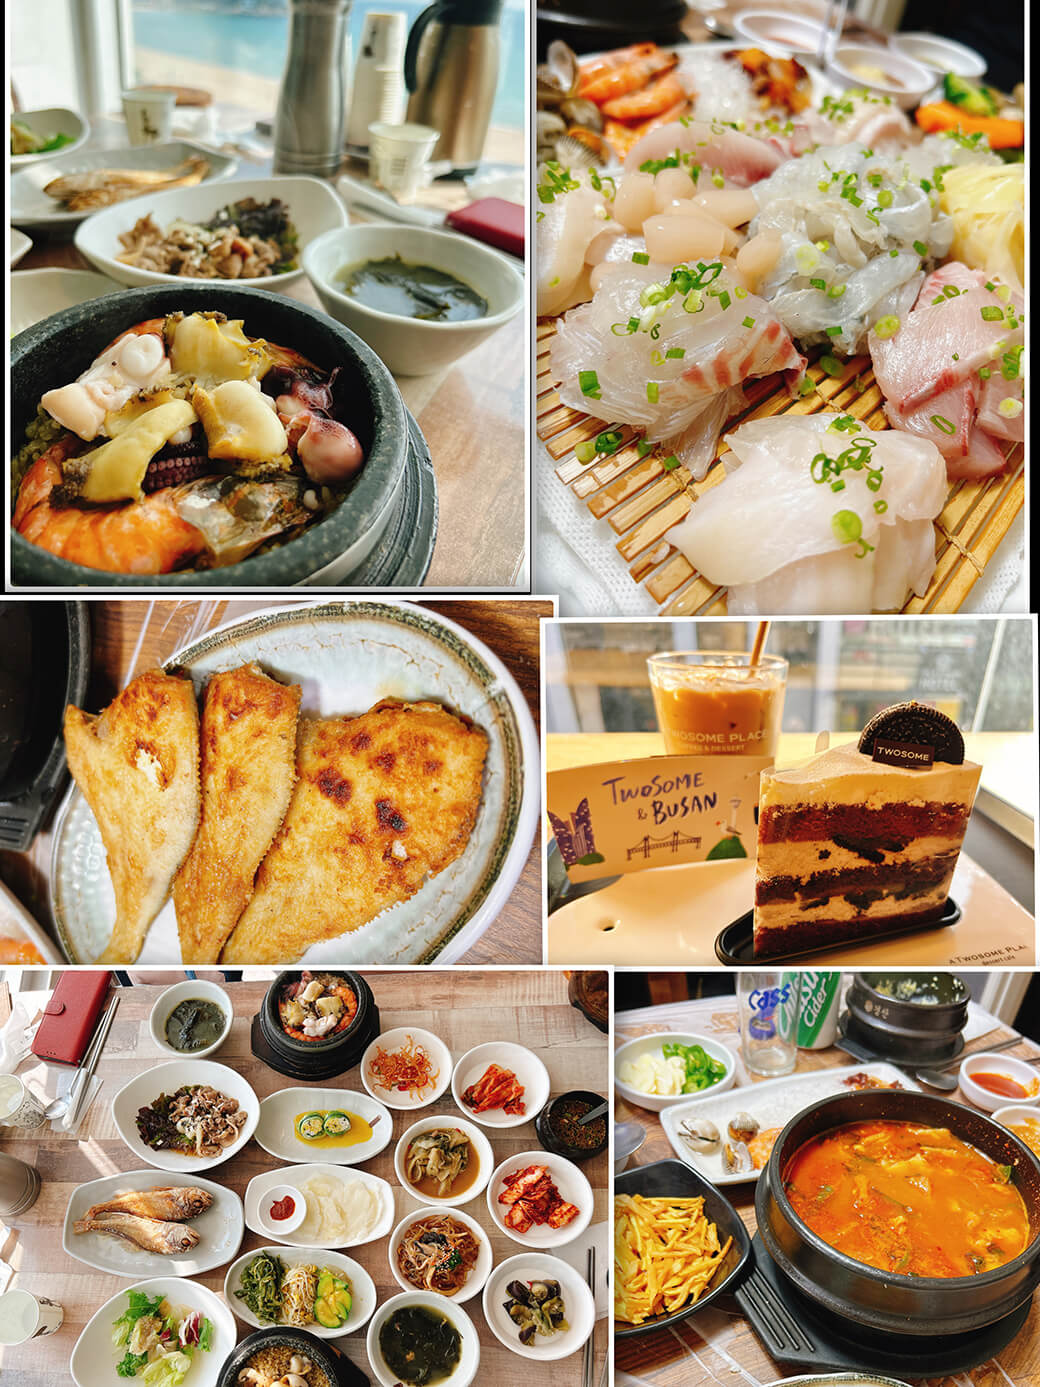 釜山で食べた料理の写真